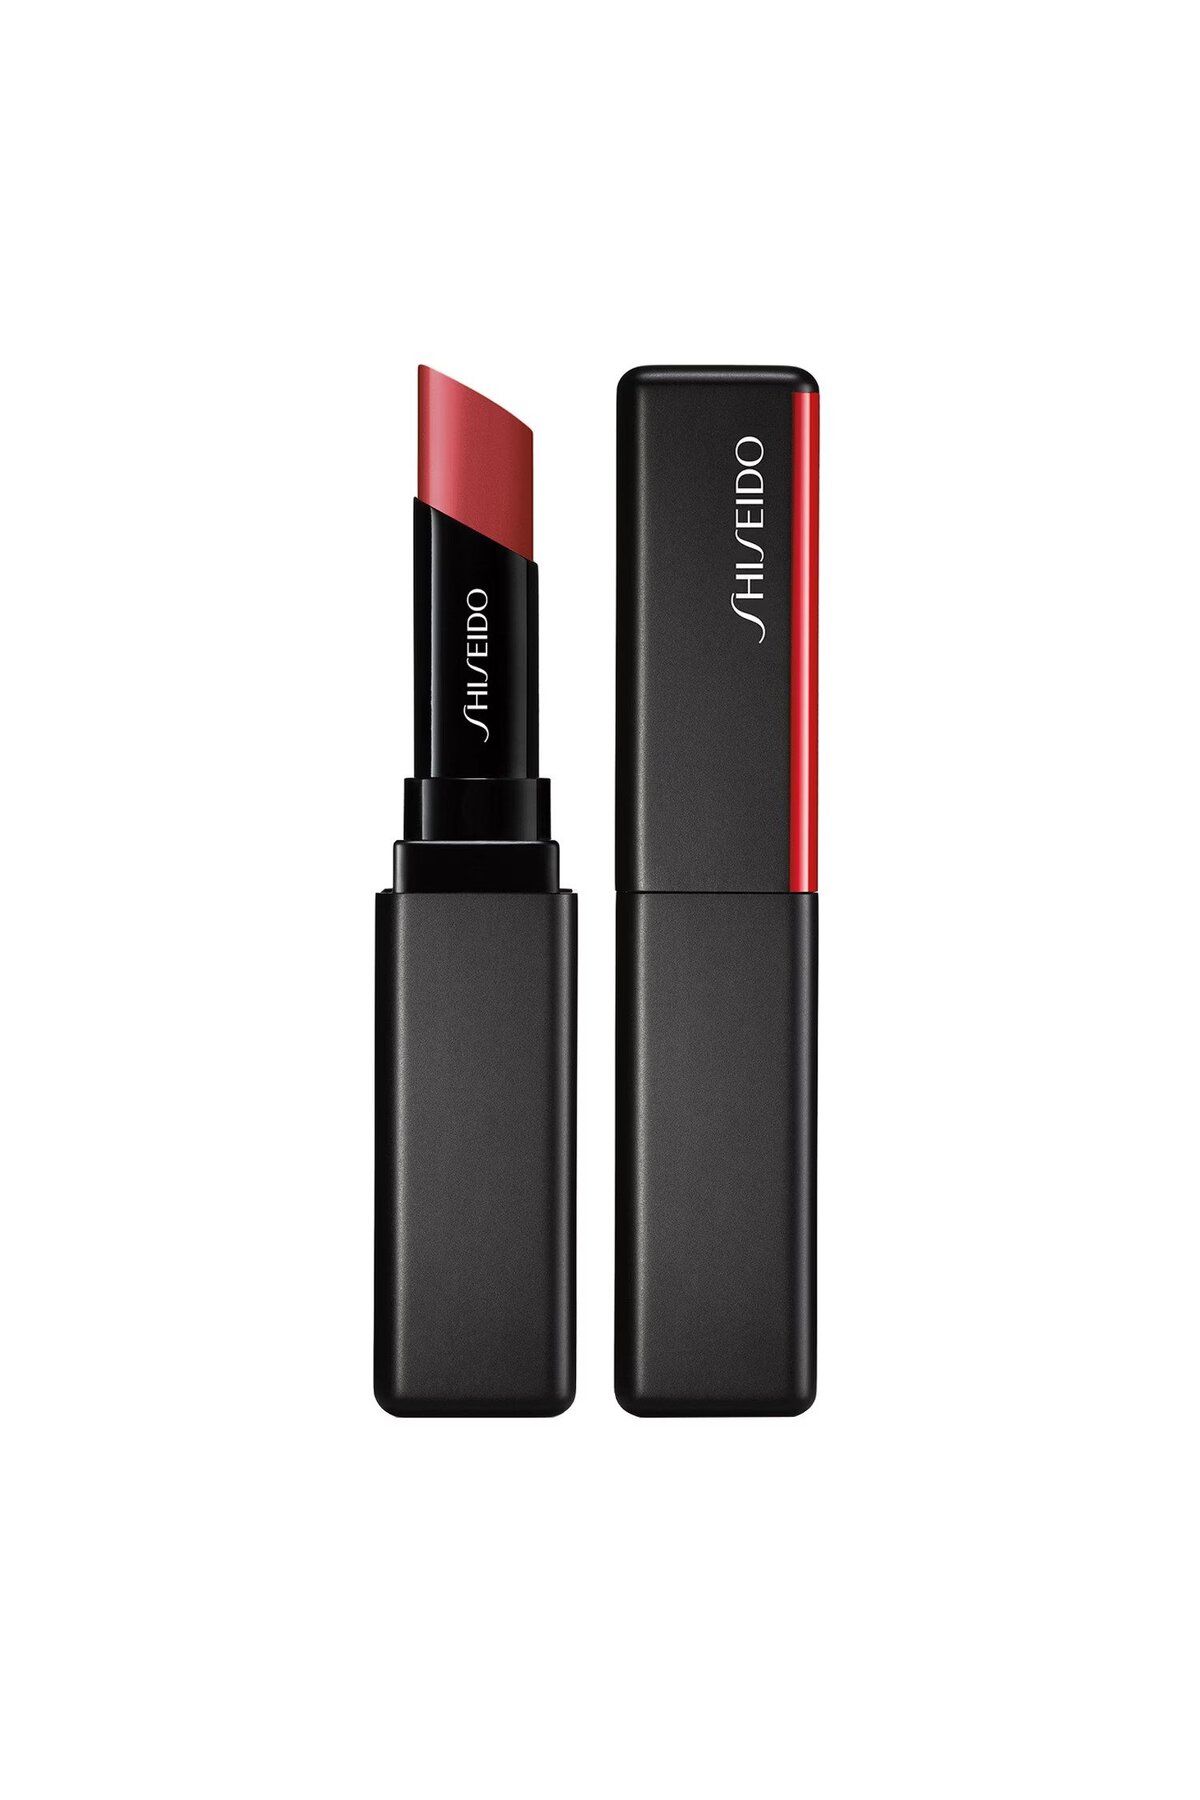 Shiseido Colorgel Lip Balm - Narin, İpeksi, Parlak Bitişli Besleyici Ve Nemlendirici Dudak Balmı 2 gr